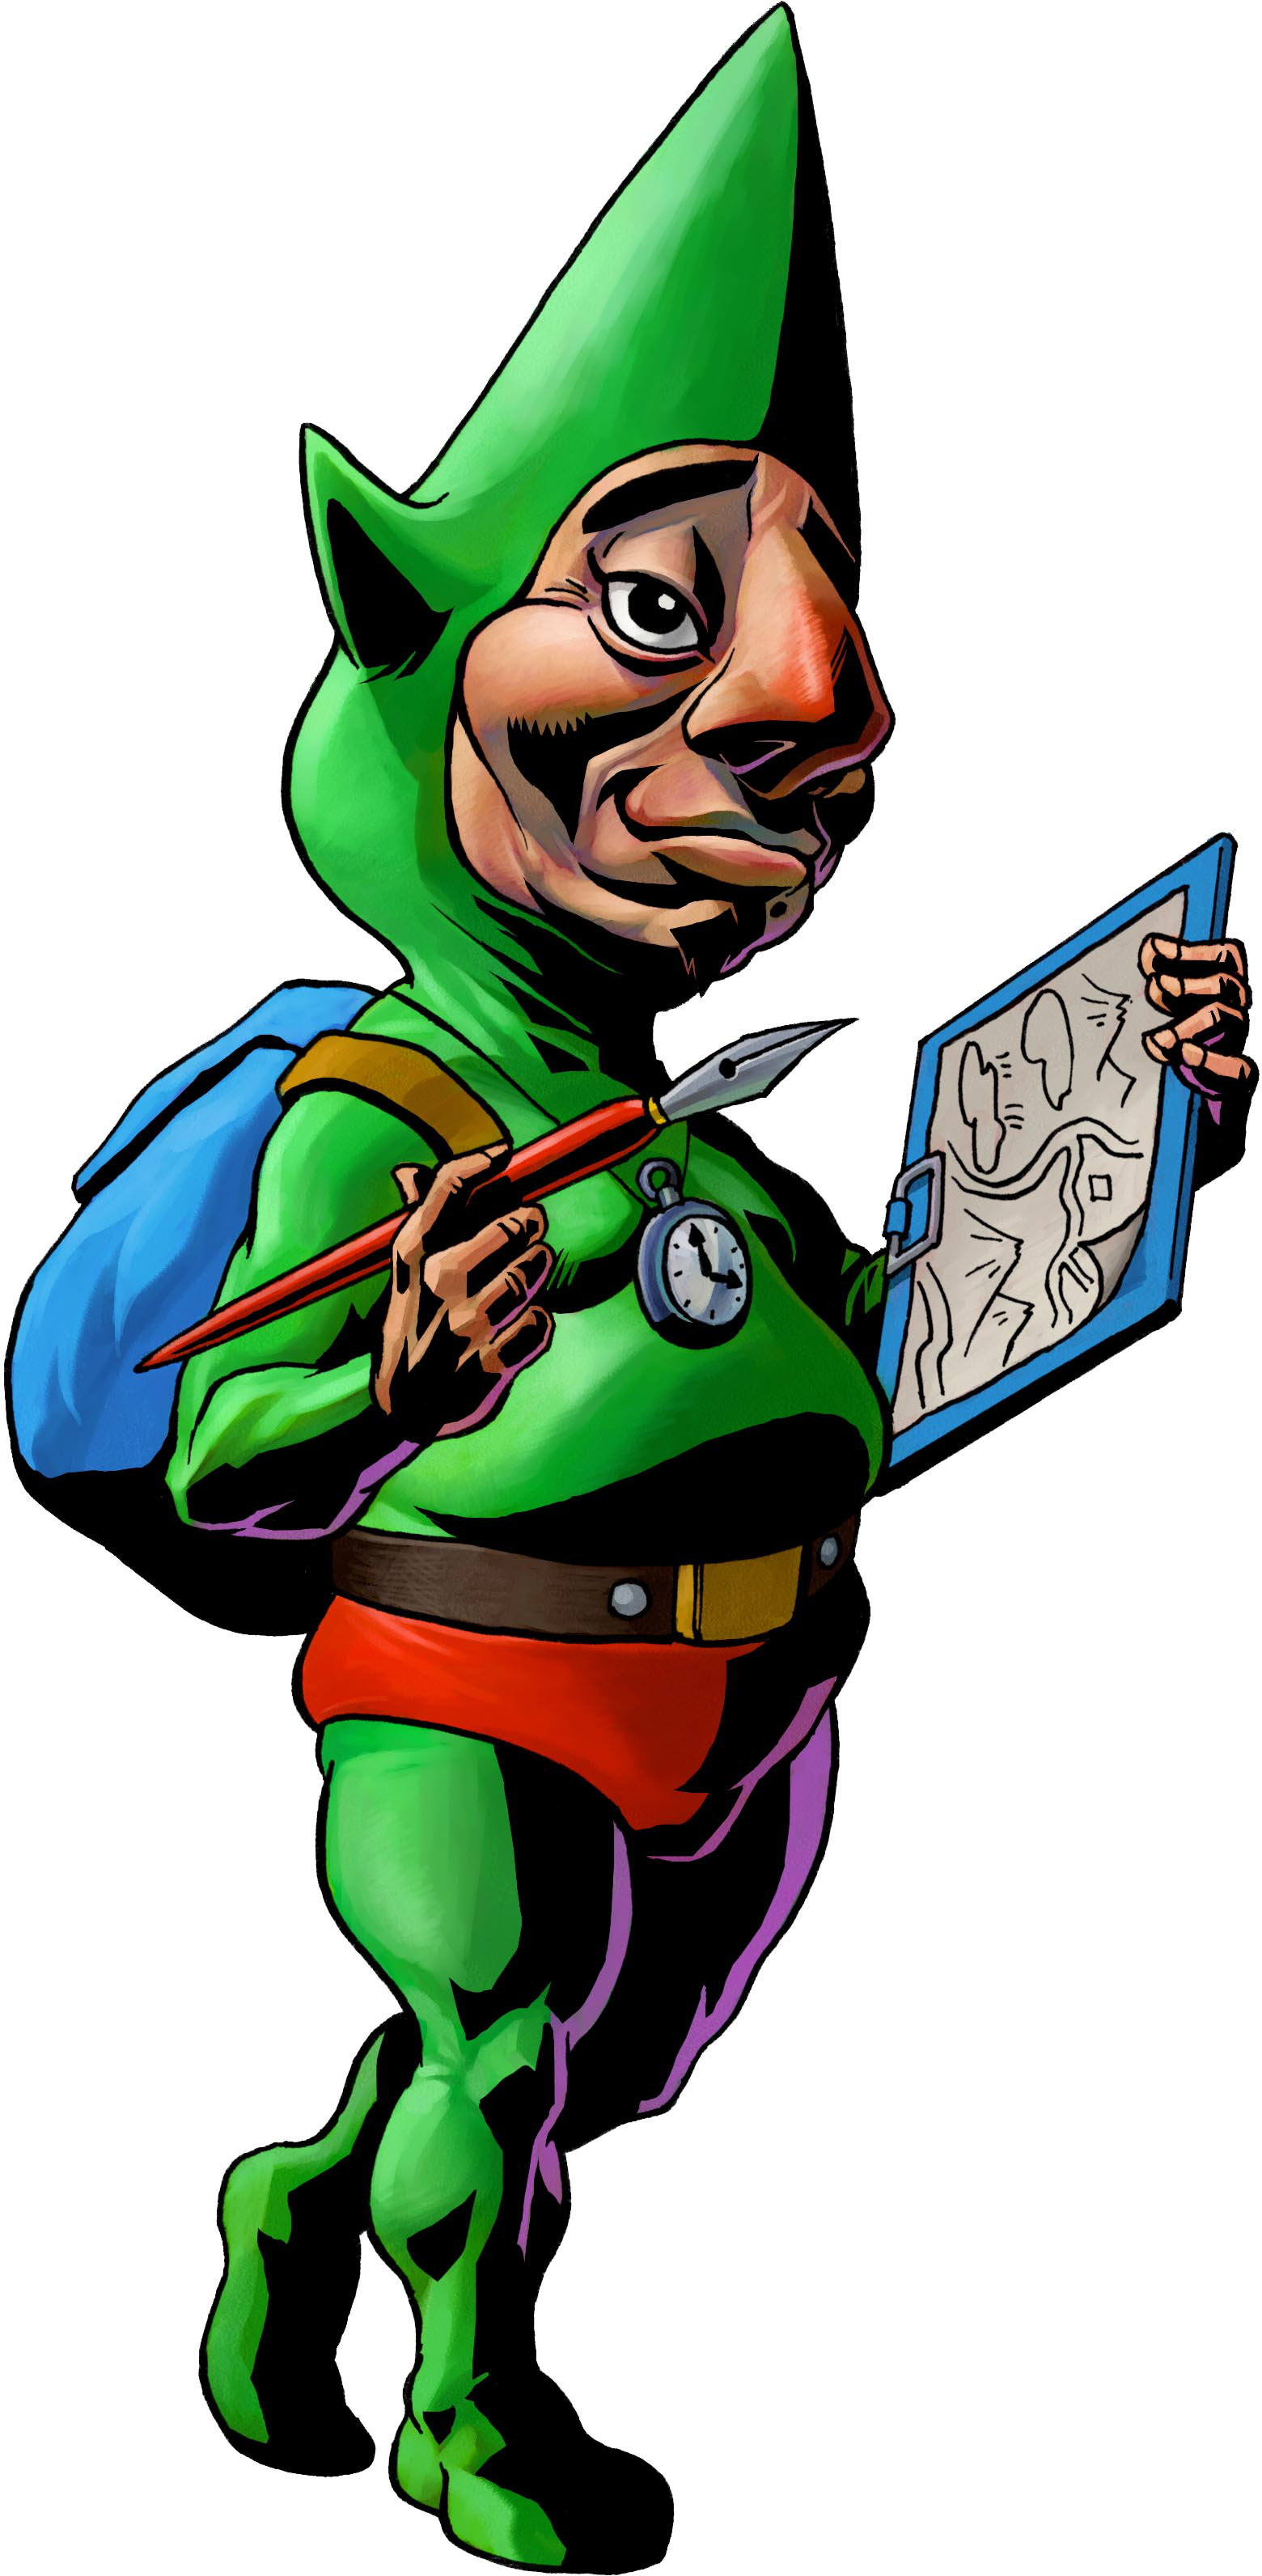 Tingle | The Legend of Zelda Wiki | Fandom powered by Wikia